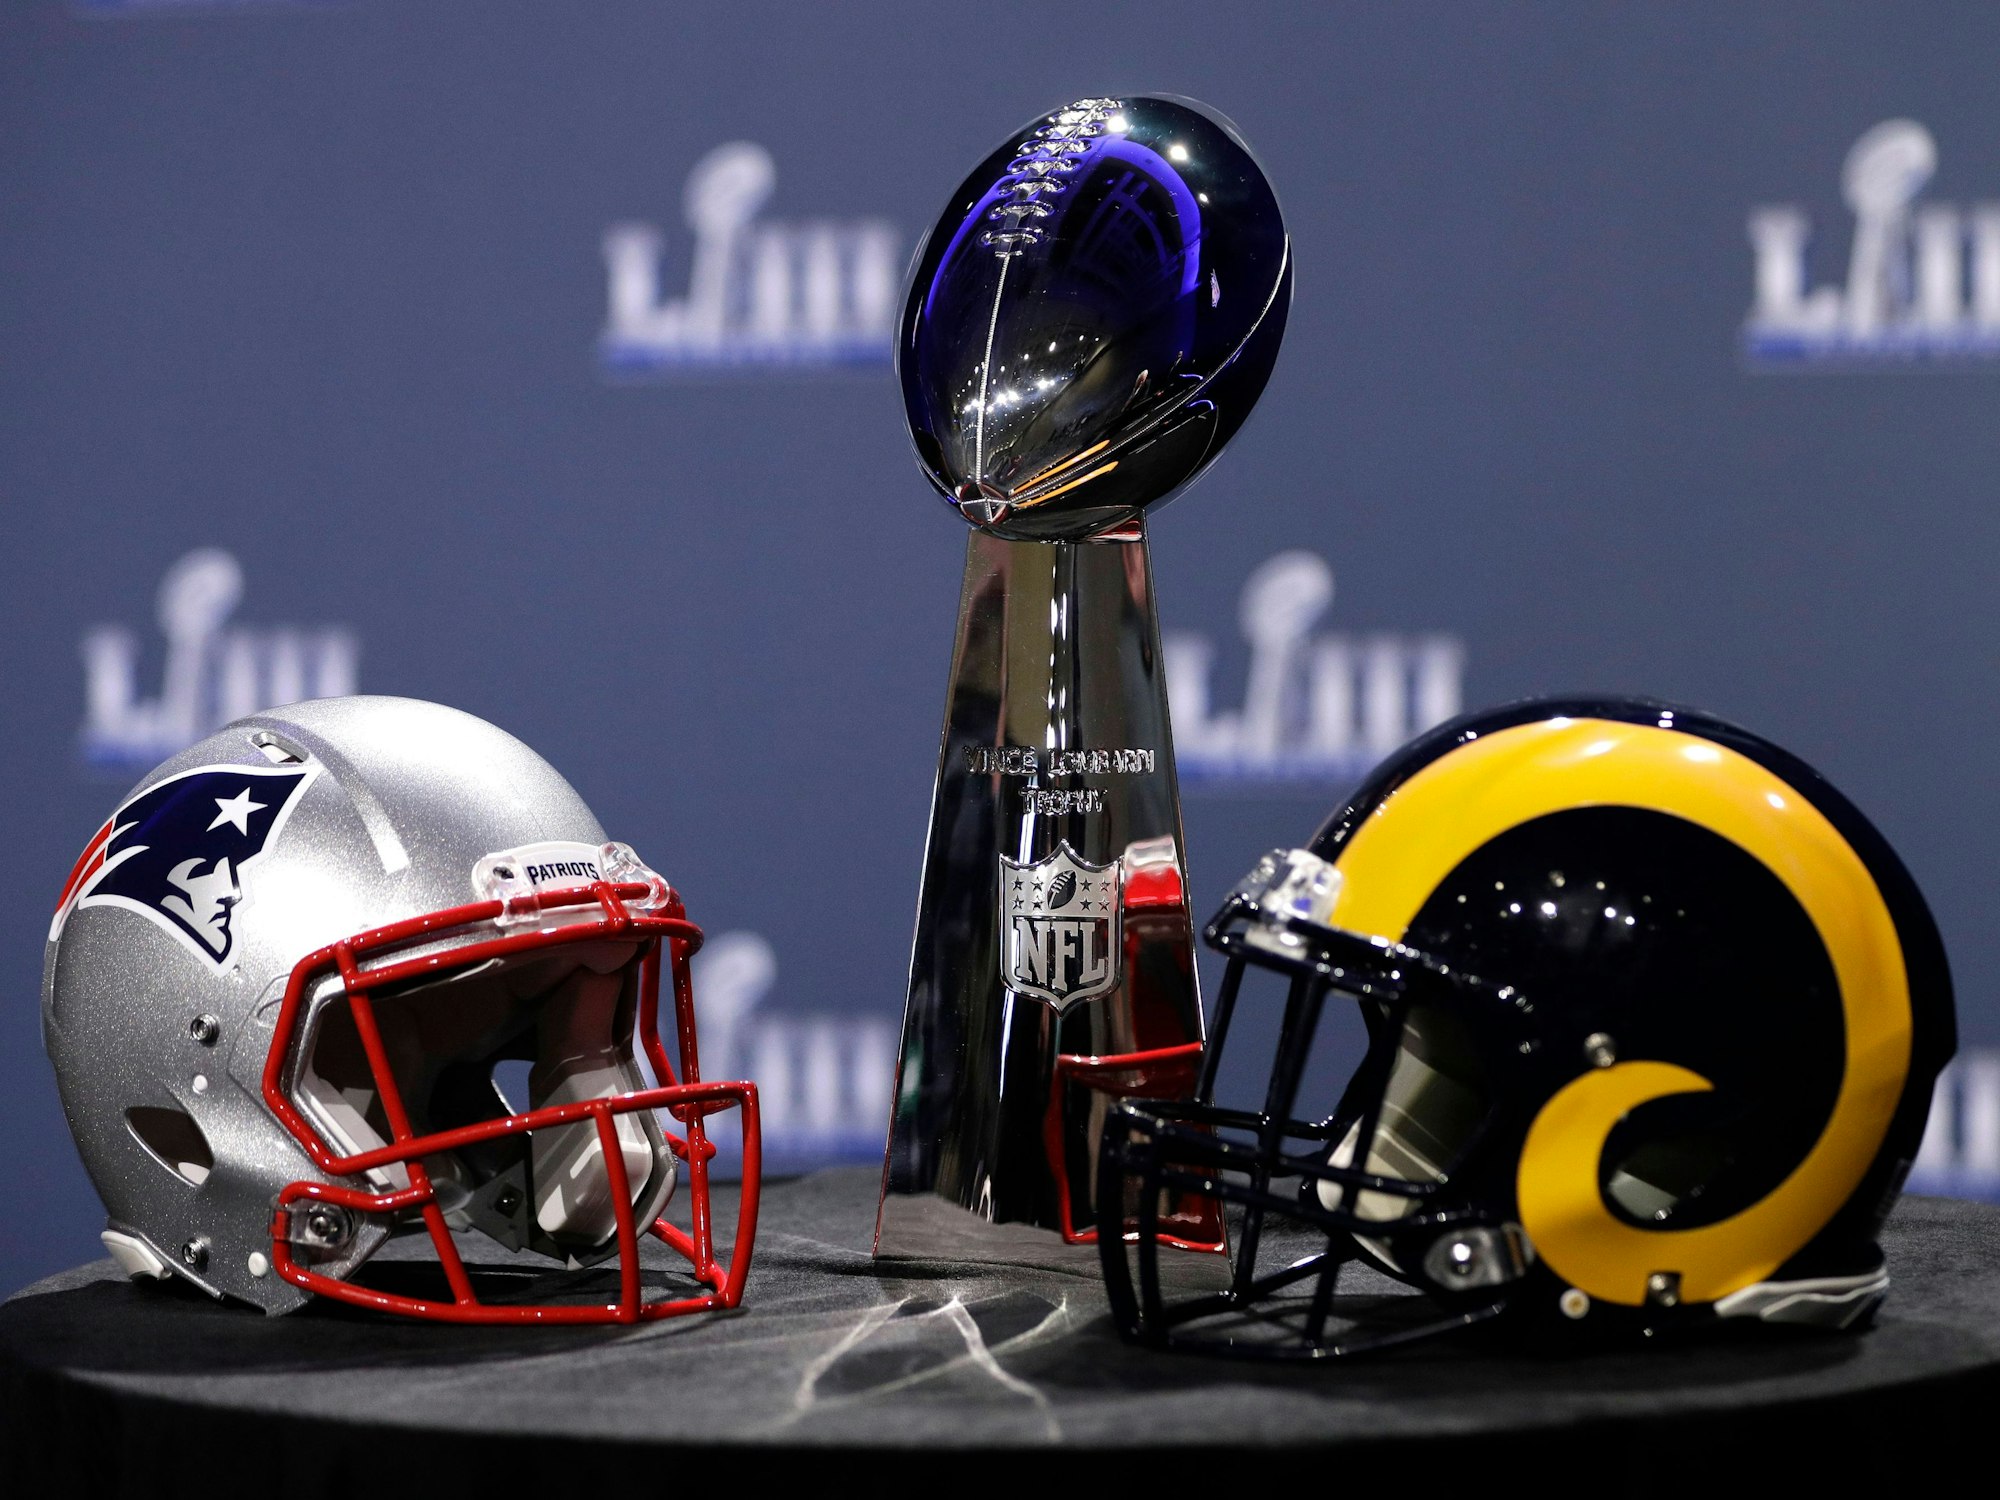 Die Vince Lombardi Trophy, der Pokal, den der Sieger des Super Bowls erhält, steht zwischen den Helmen der beiden Finalisten aus dem Jahr 2019, den New England Patriots und den Los Angeles Rams.